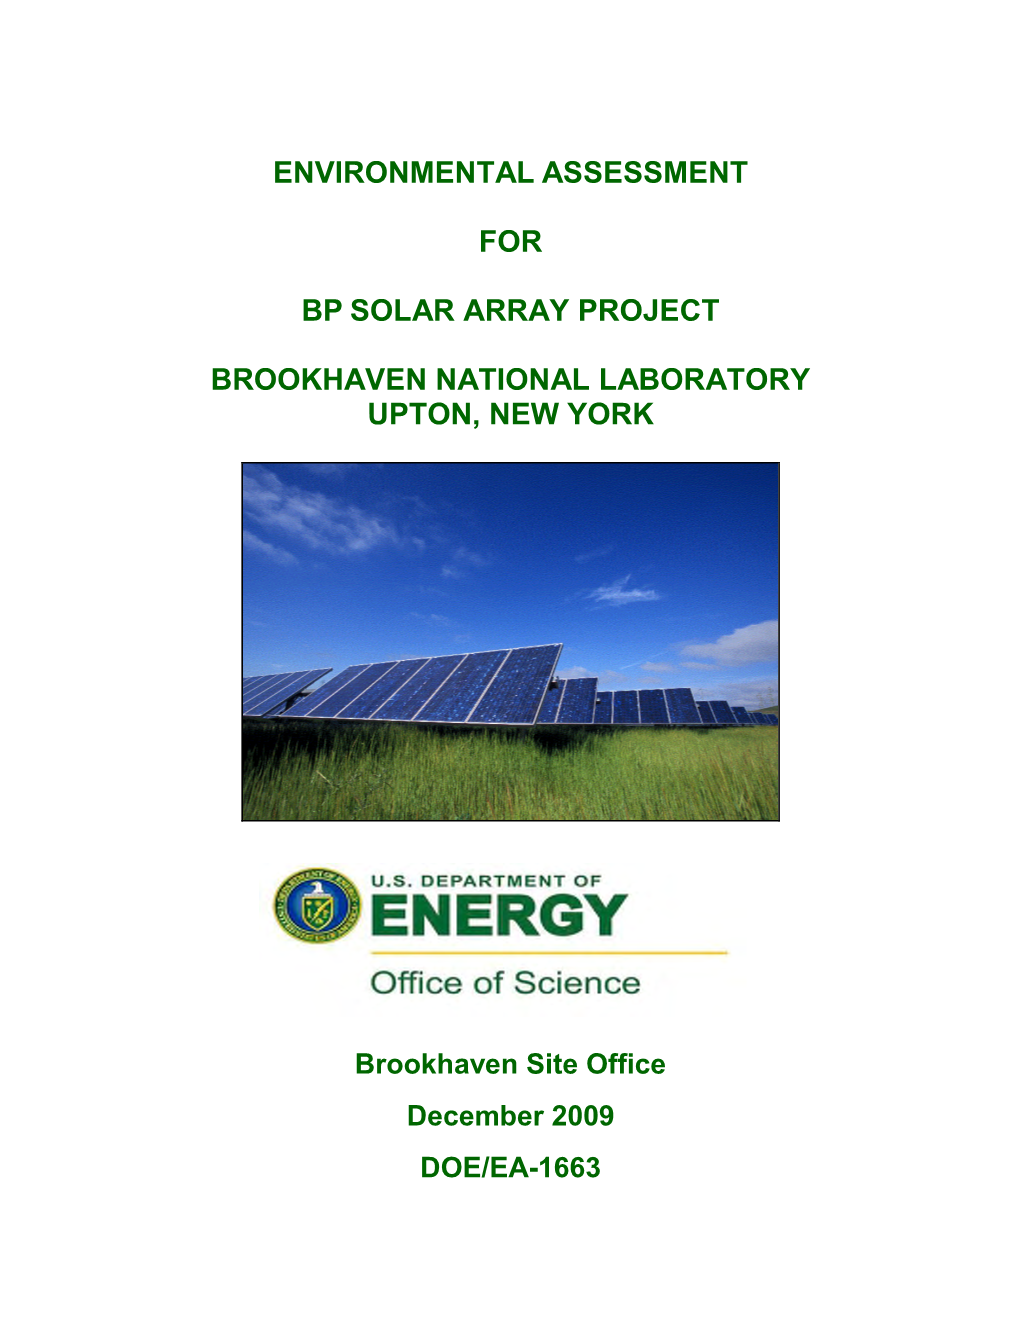 DOE/EA-1663: Environmental Assessment for BP Solar Array